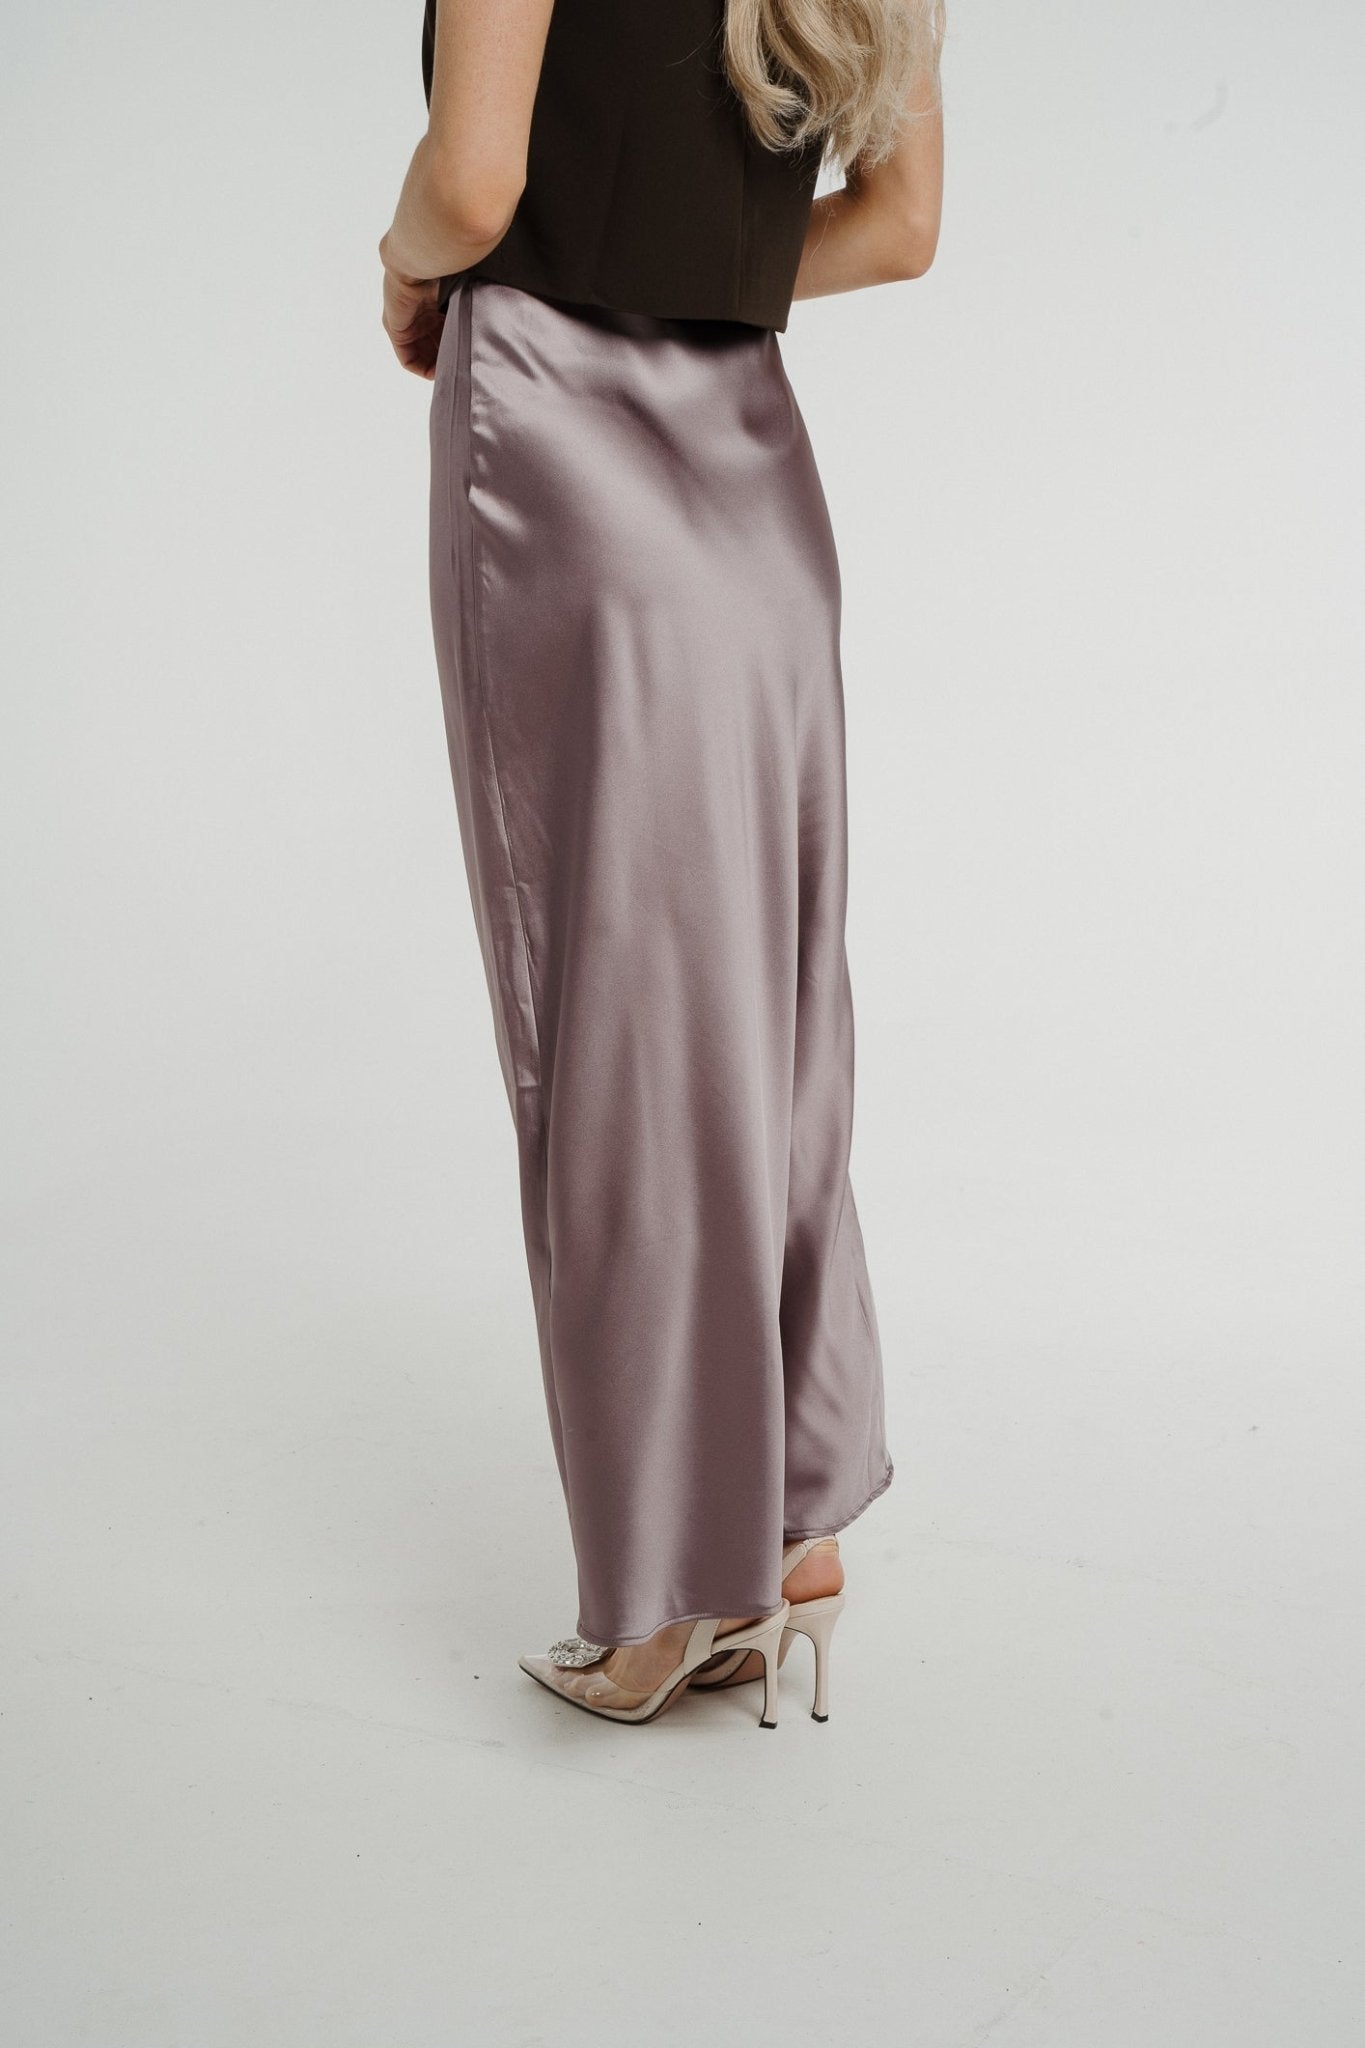 Elsa Longline Satin Skirt In Mauve - The Walk in Wardrobe